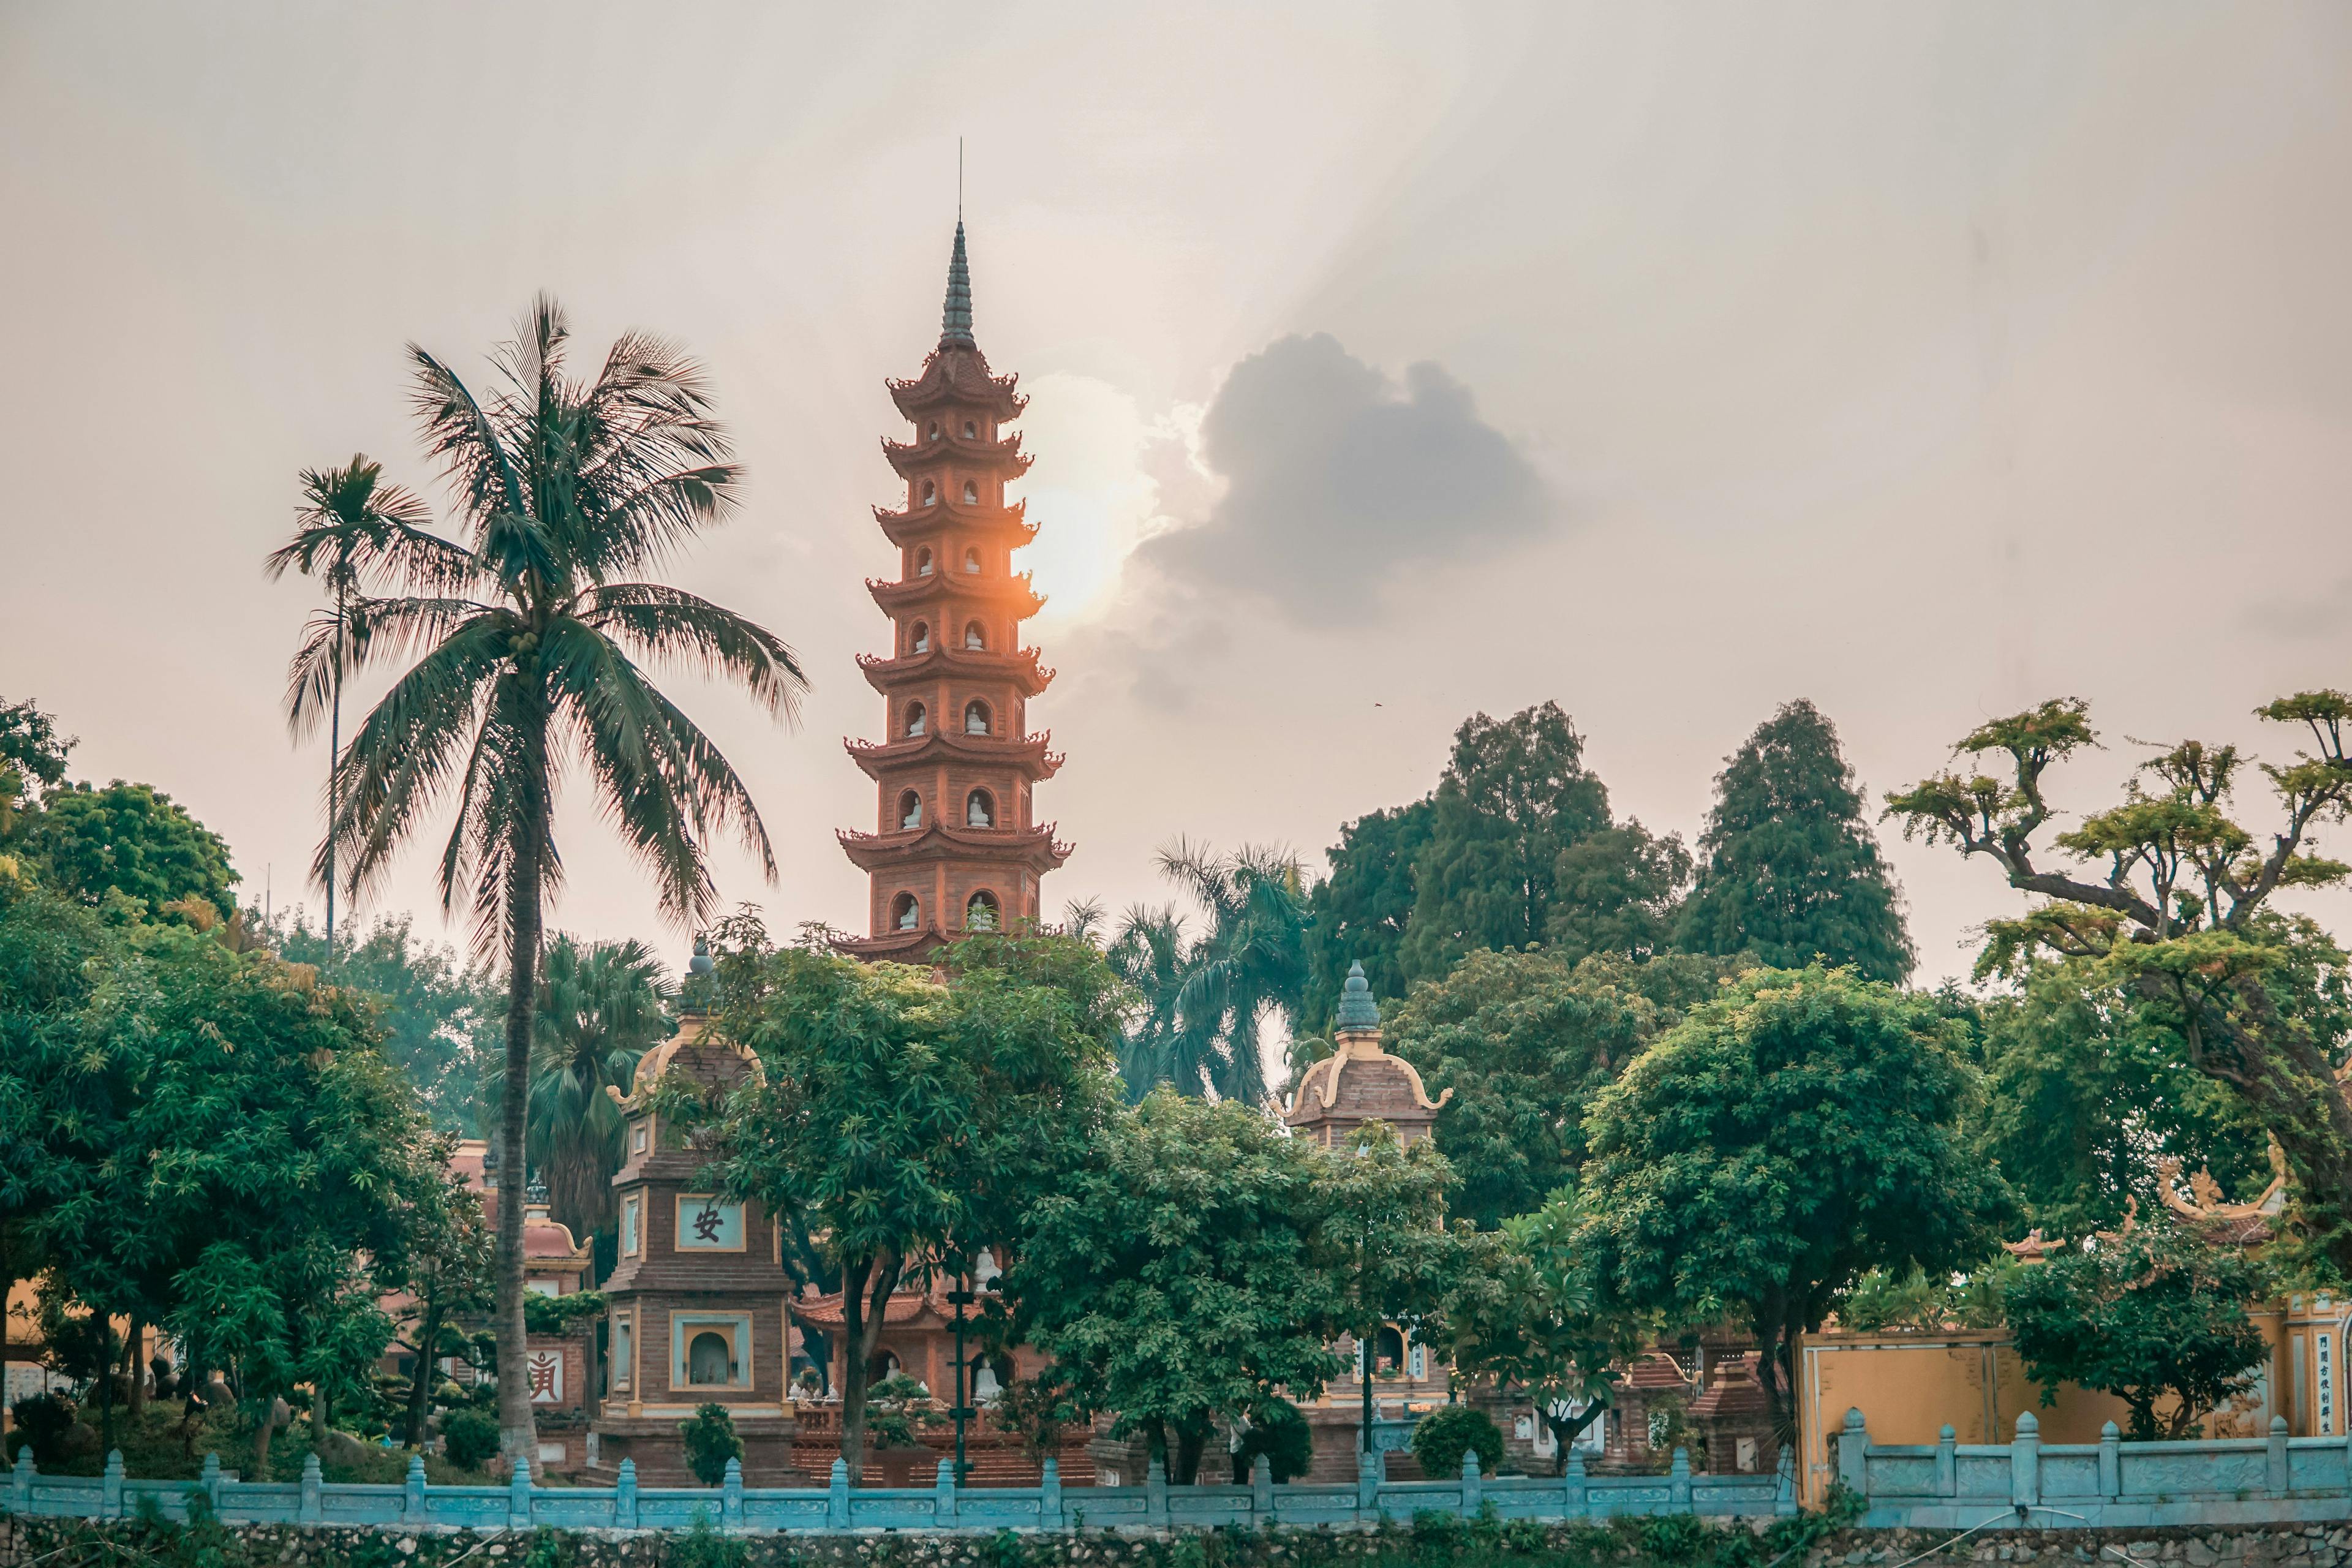 Pagoda in Hanoi city in Vietnam.